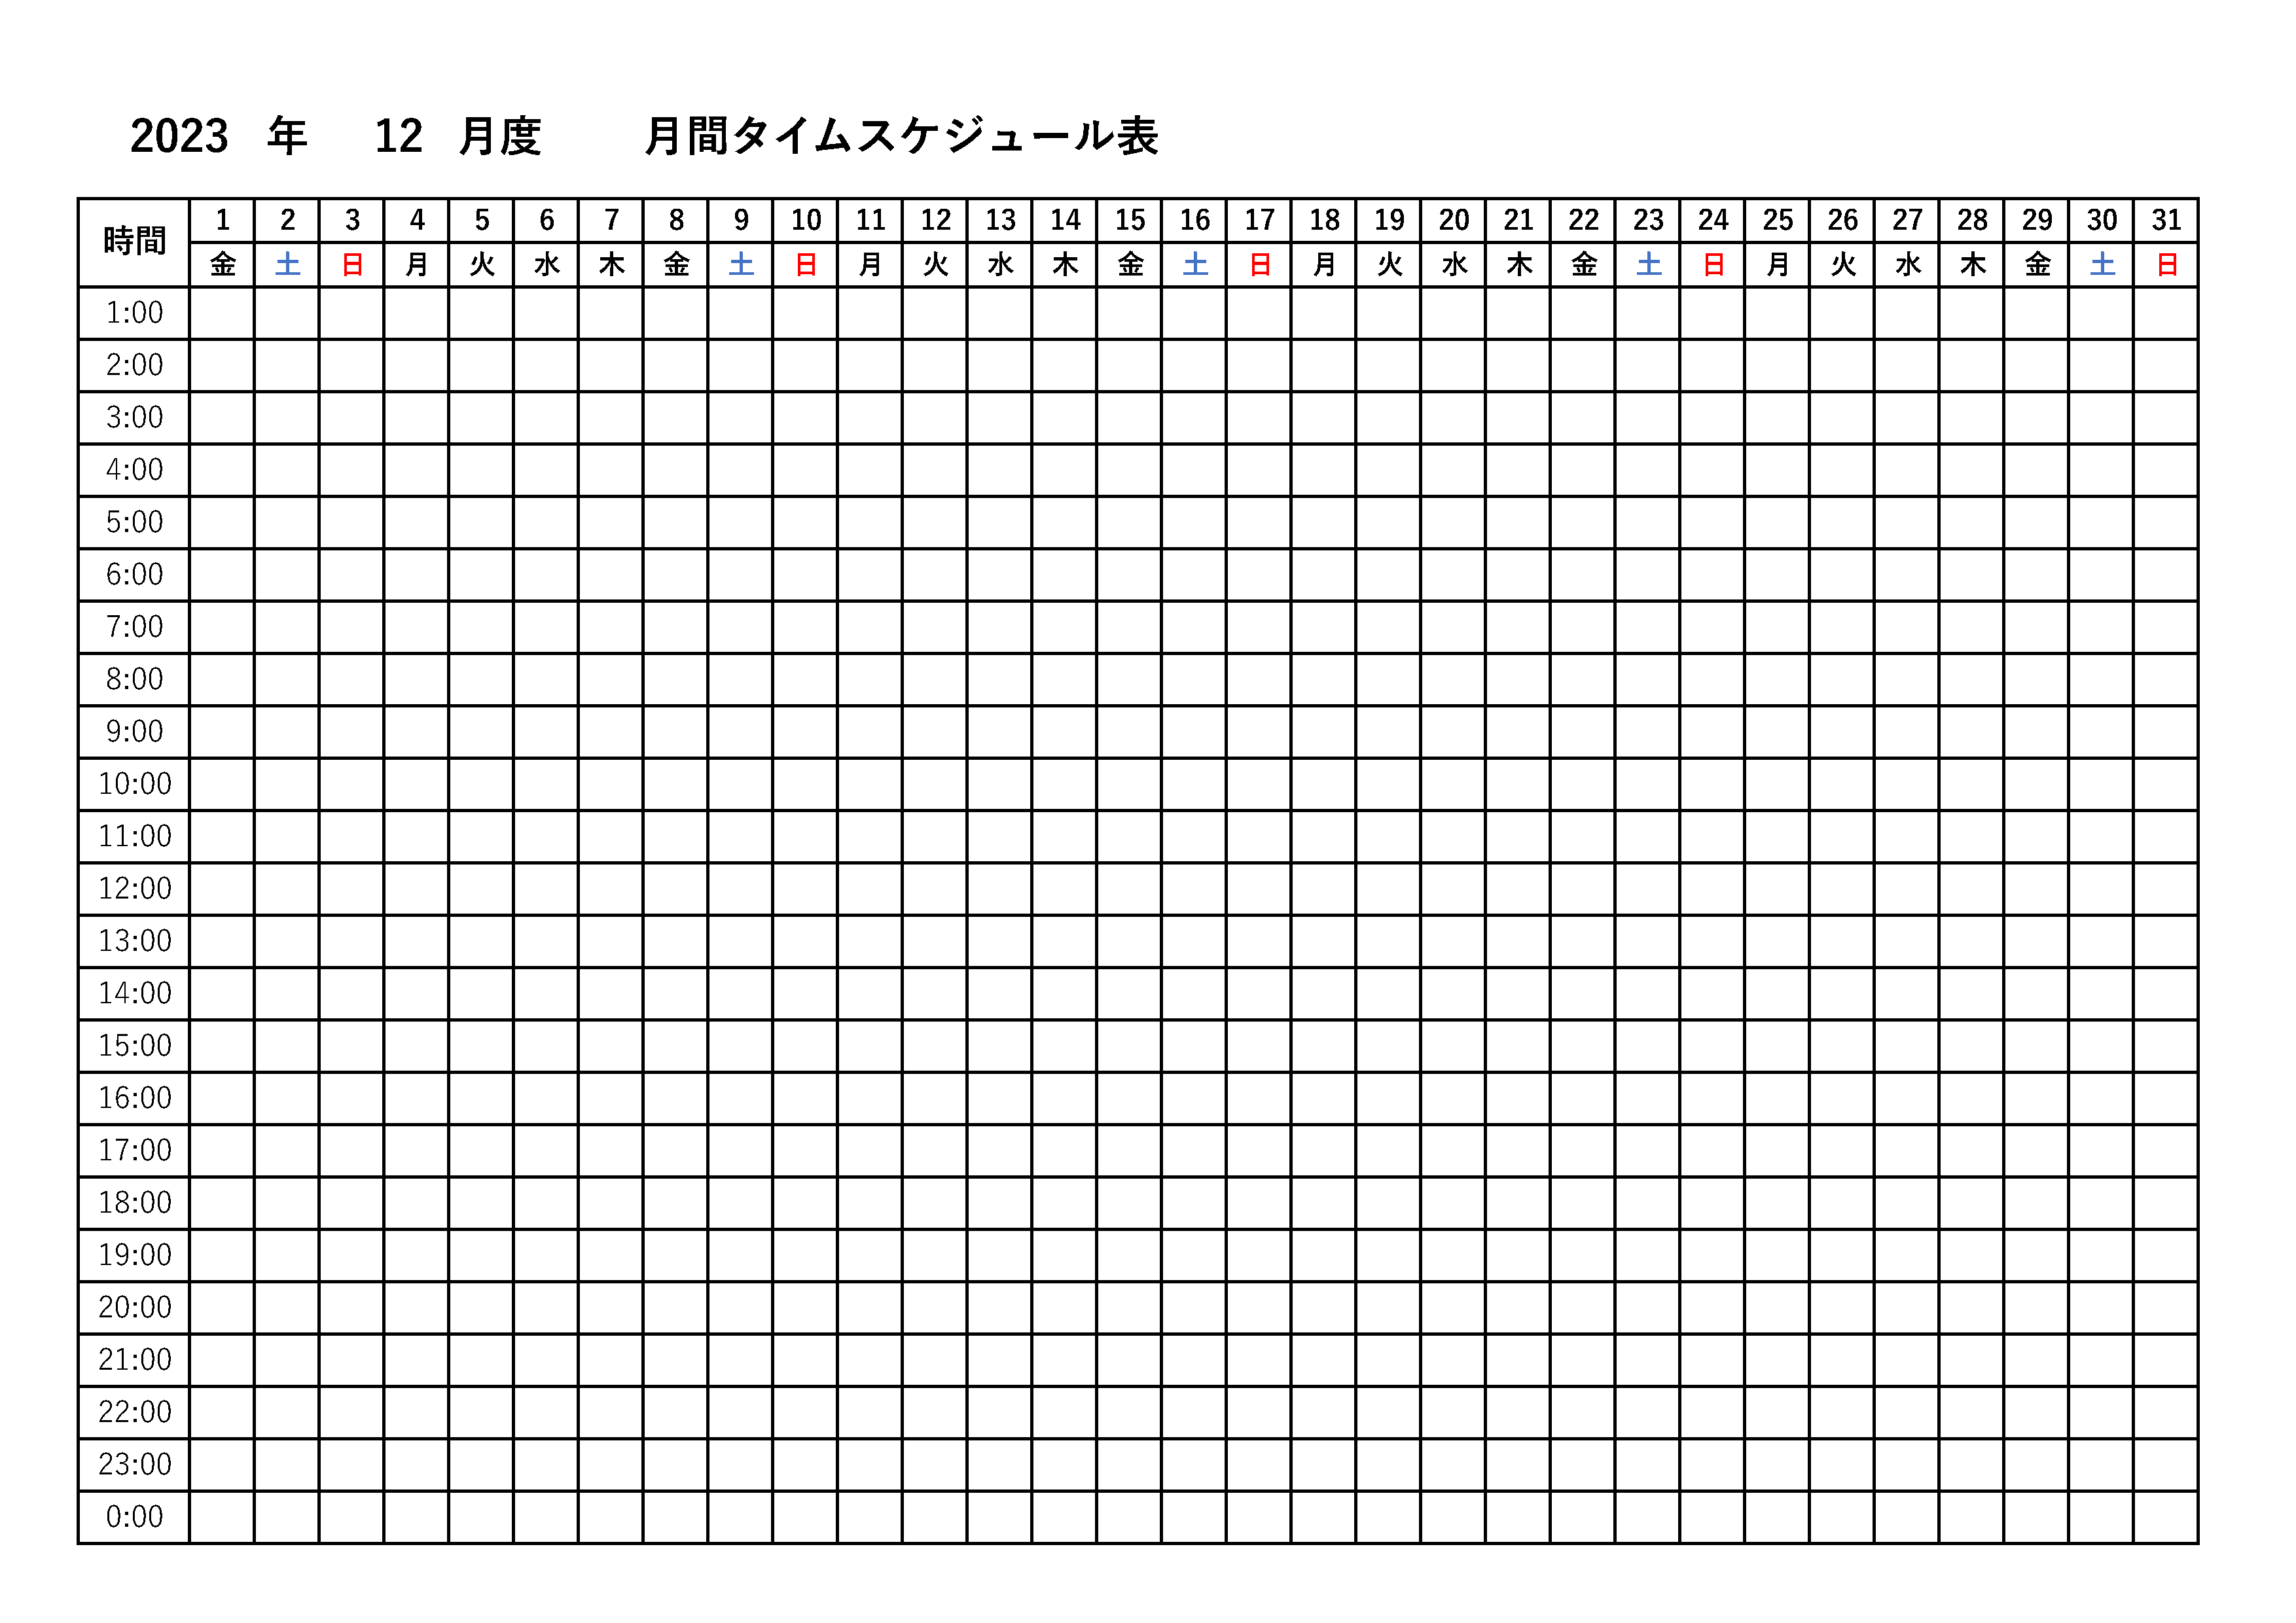 横向きに1日から31日まで表示されている、月間タイムスケジュール表